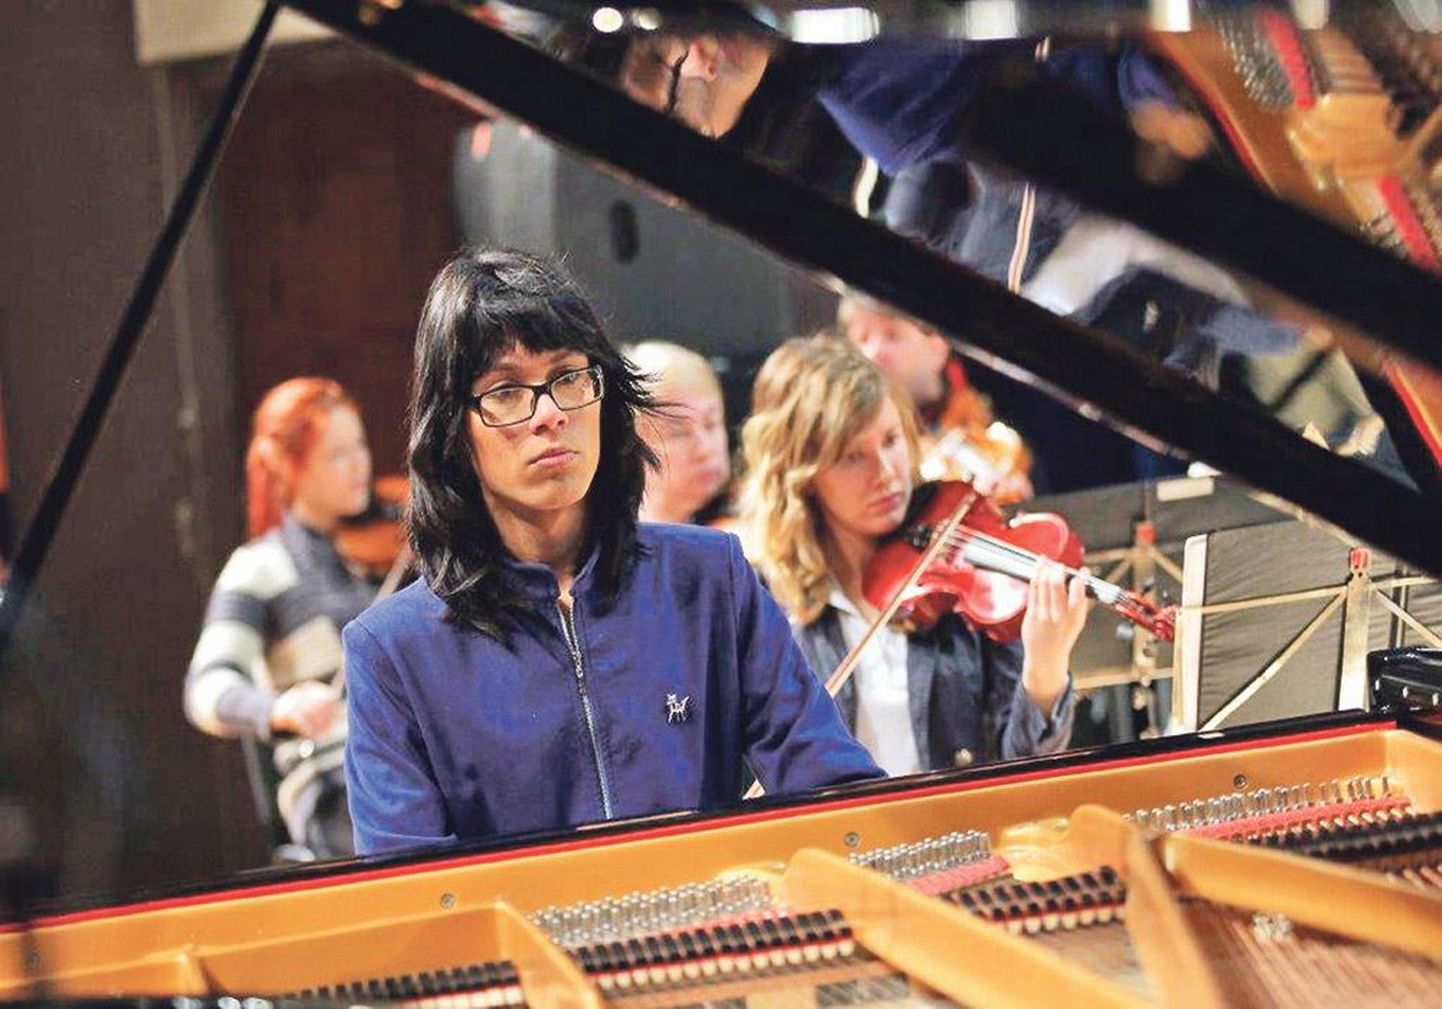 Лео Дубовски стал в 2012 году лауреатом Шопеновского конкурса и выступил с оркестром на заключительном концерте в зале «Эстония». Сейчас пианист учится в Эстонской академии музыки.